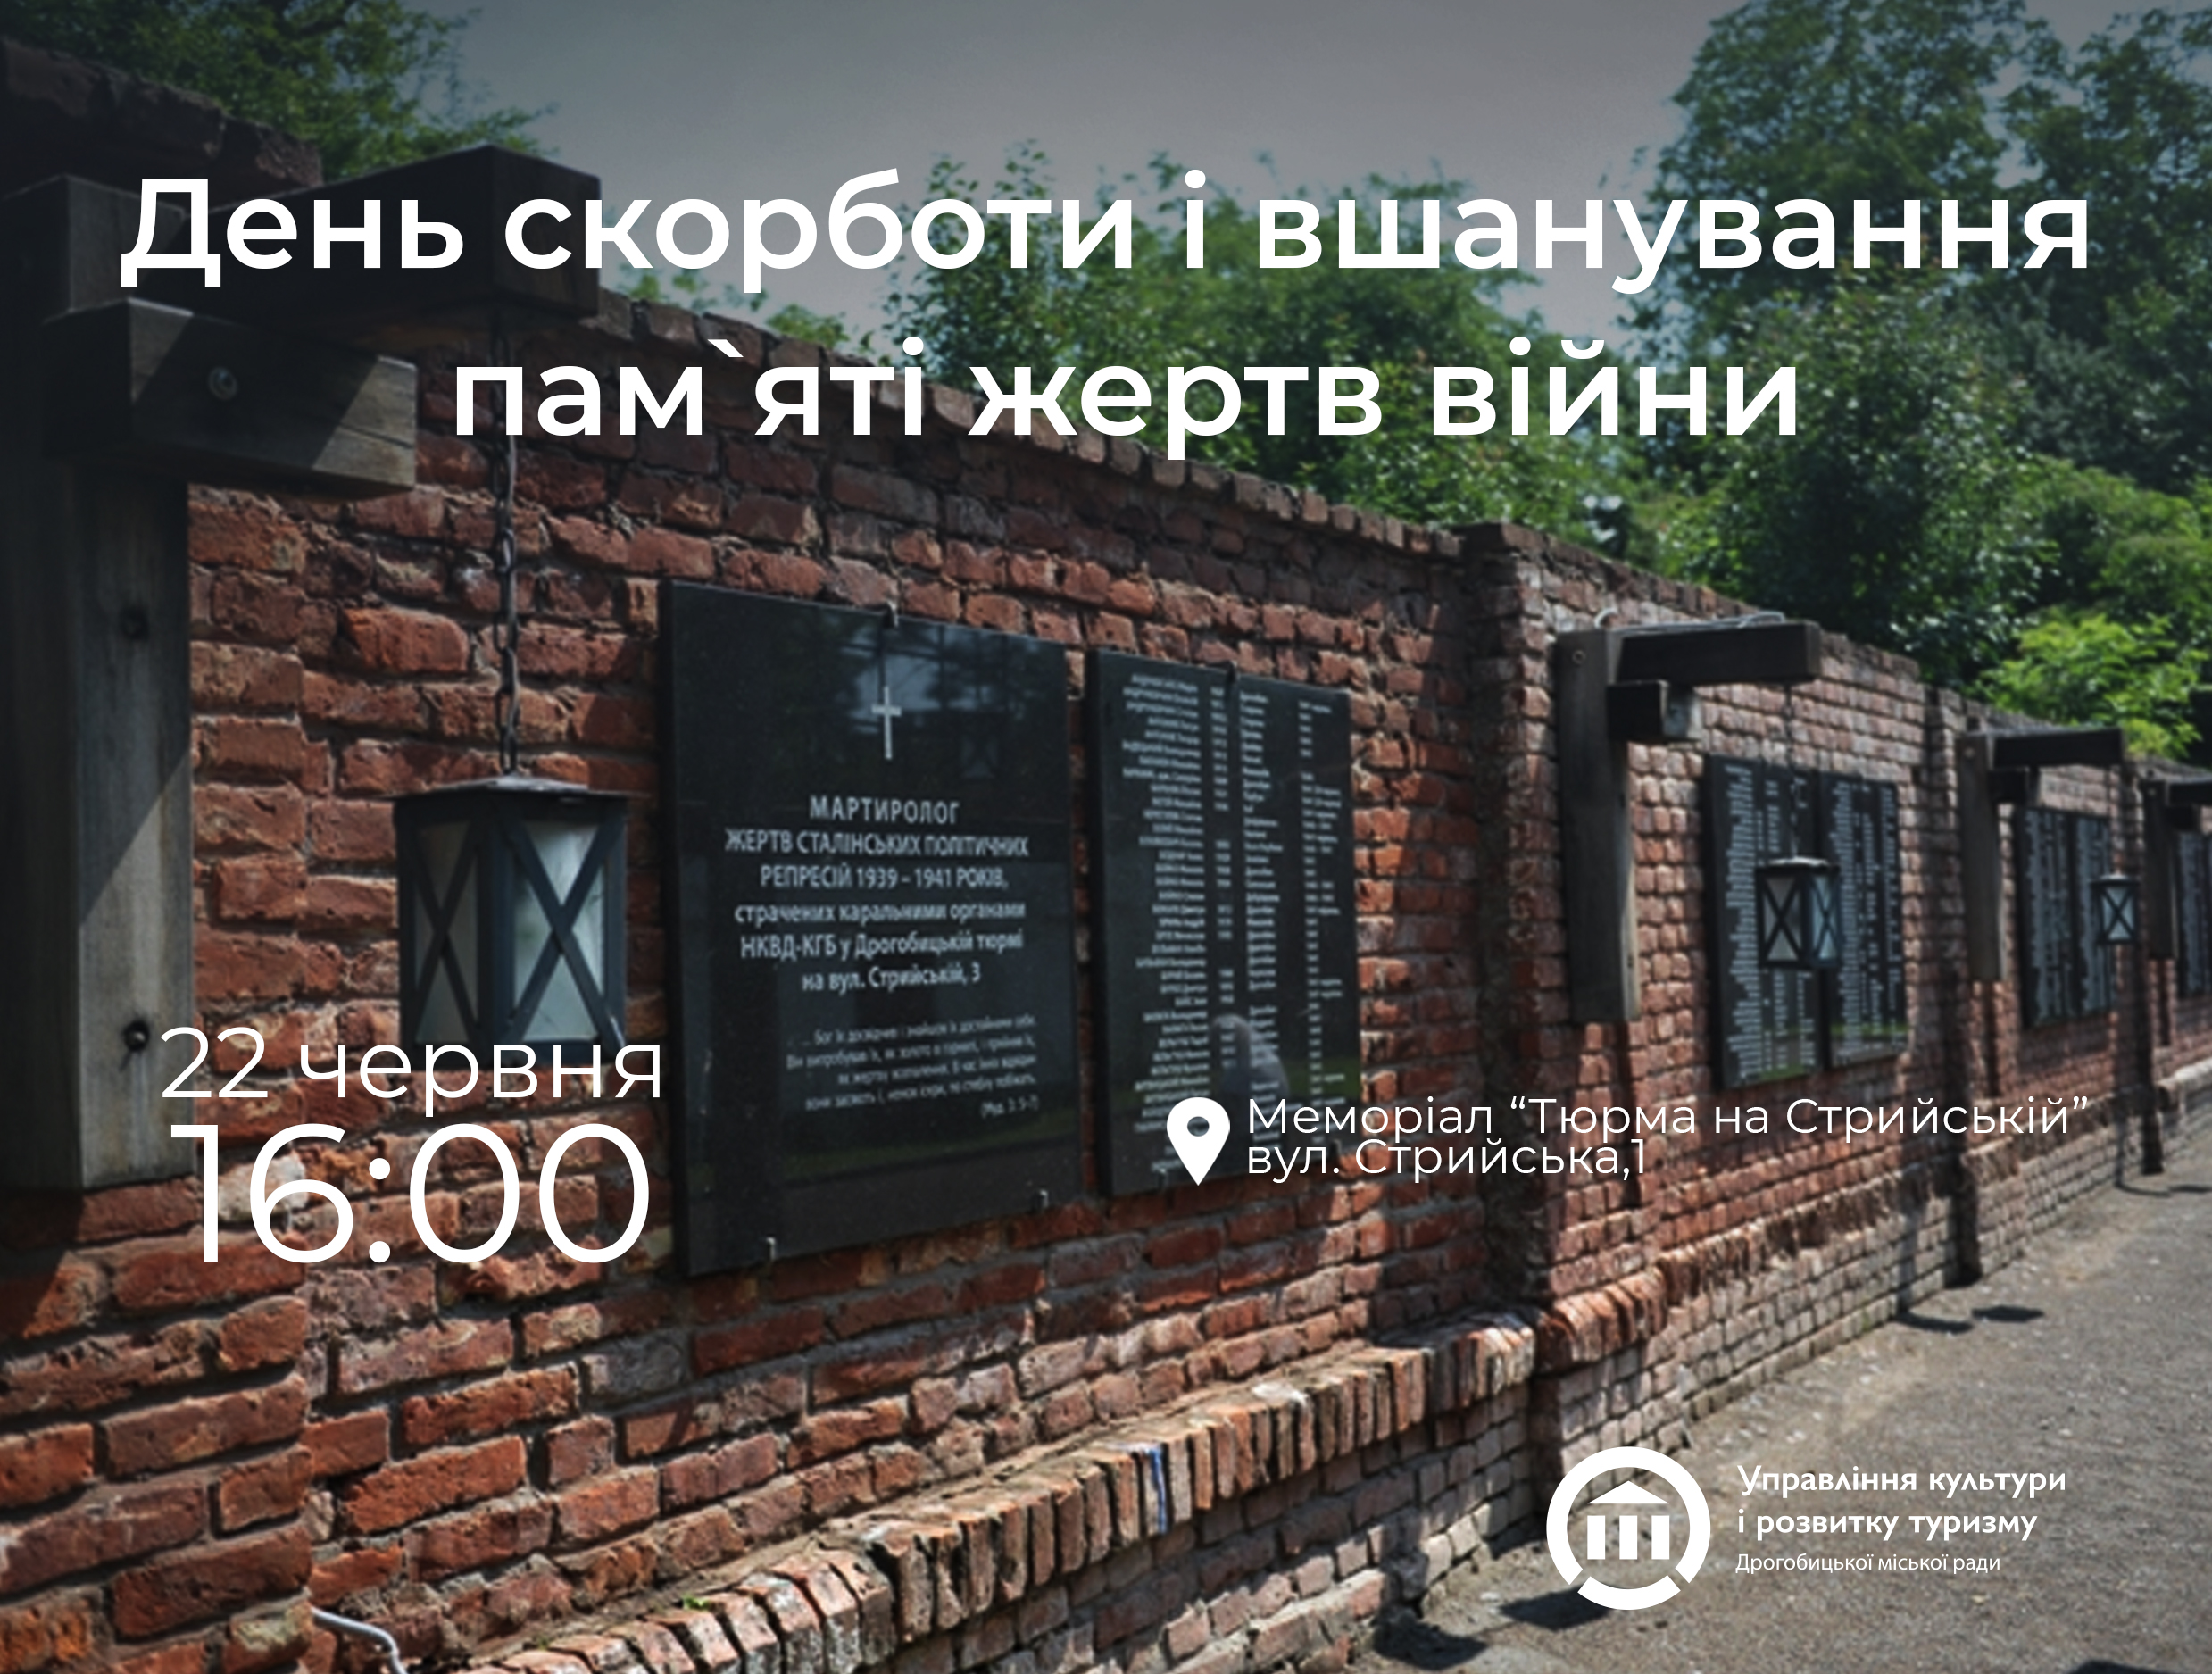 Тюрма на Стрийській: дрогобичан та гостей міста запрошують вшанувати жертв Другої світової війни